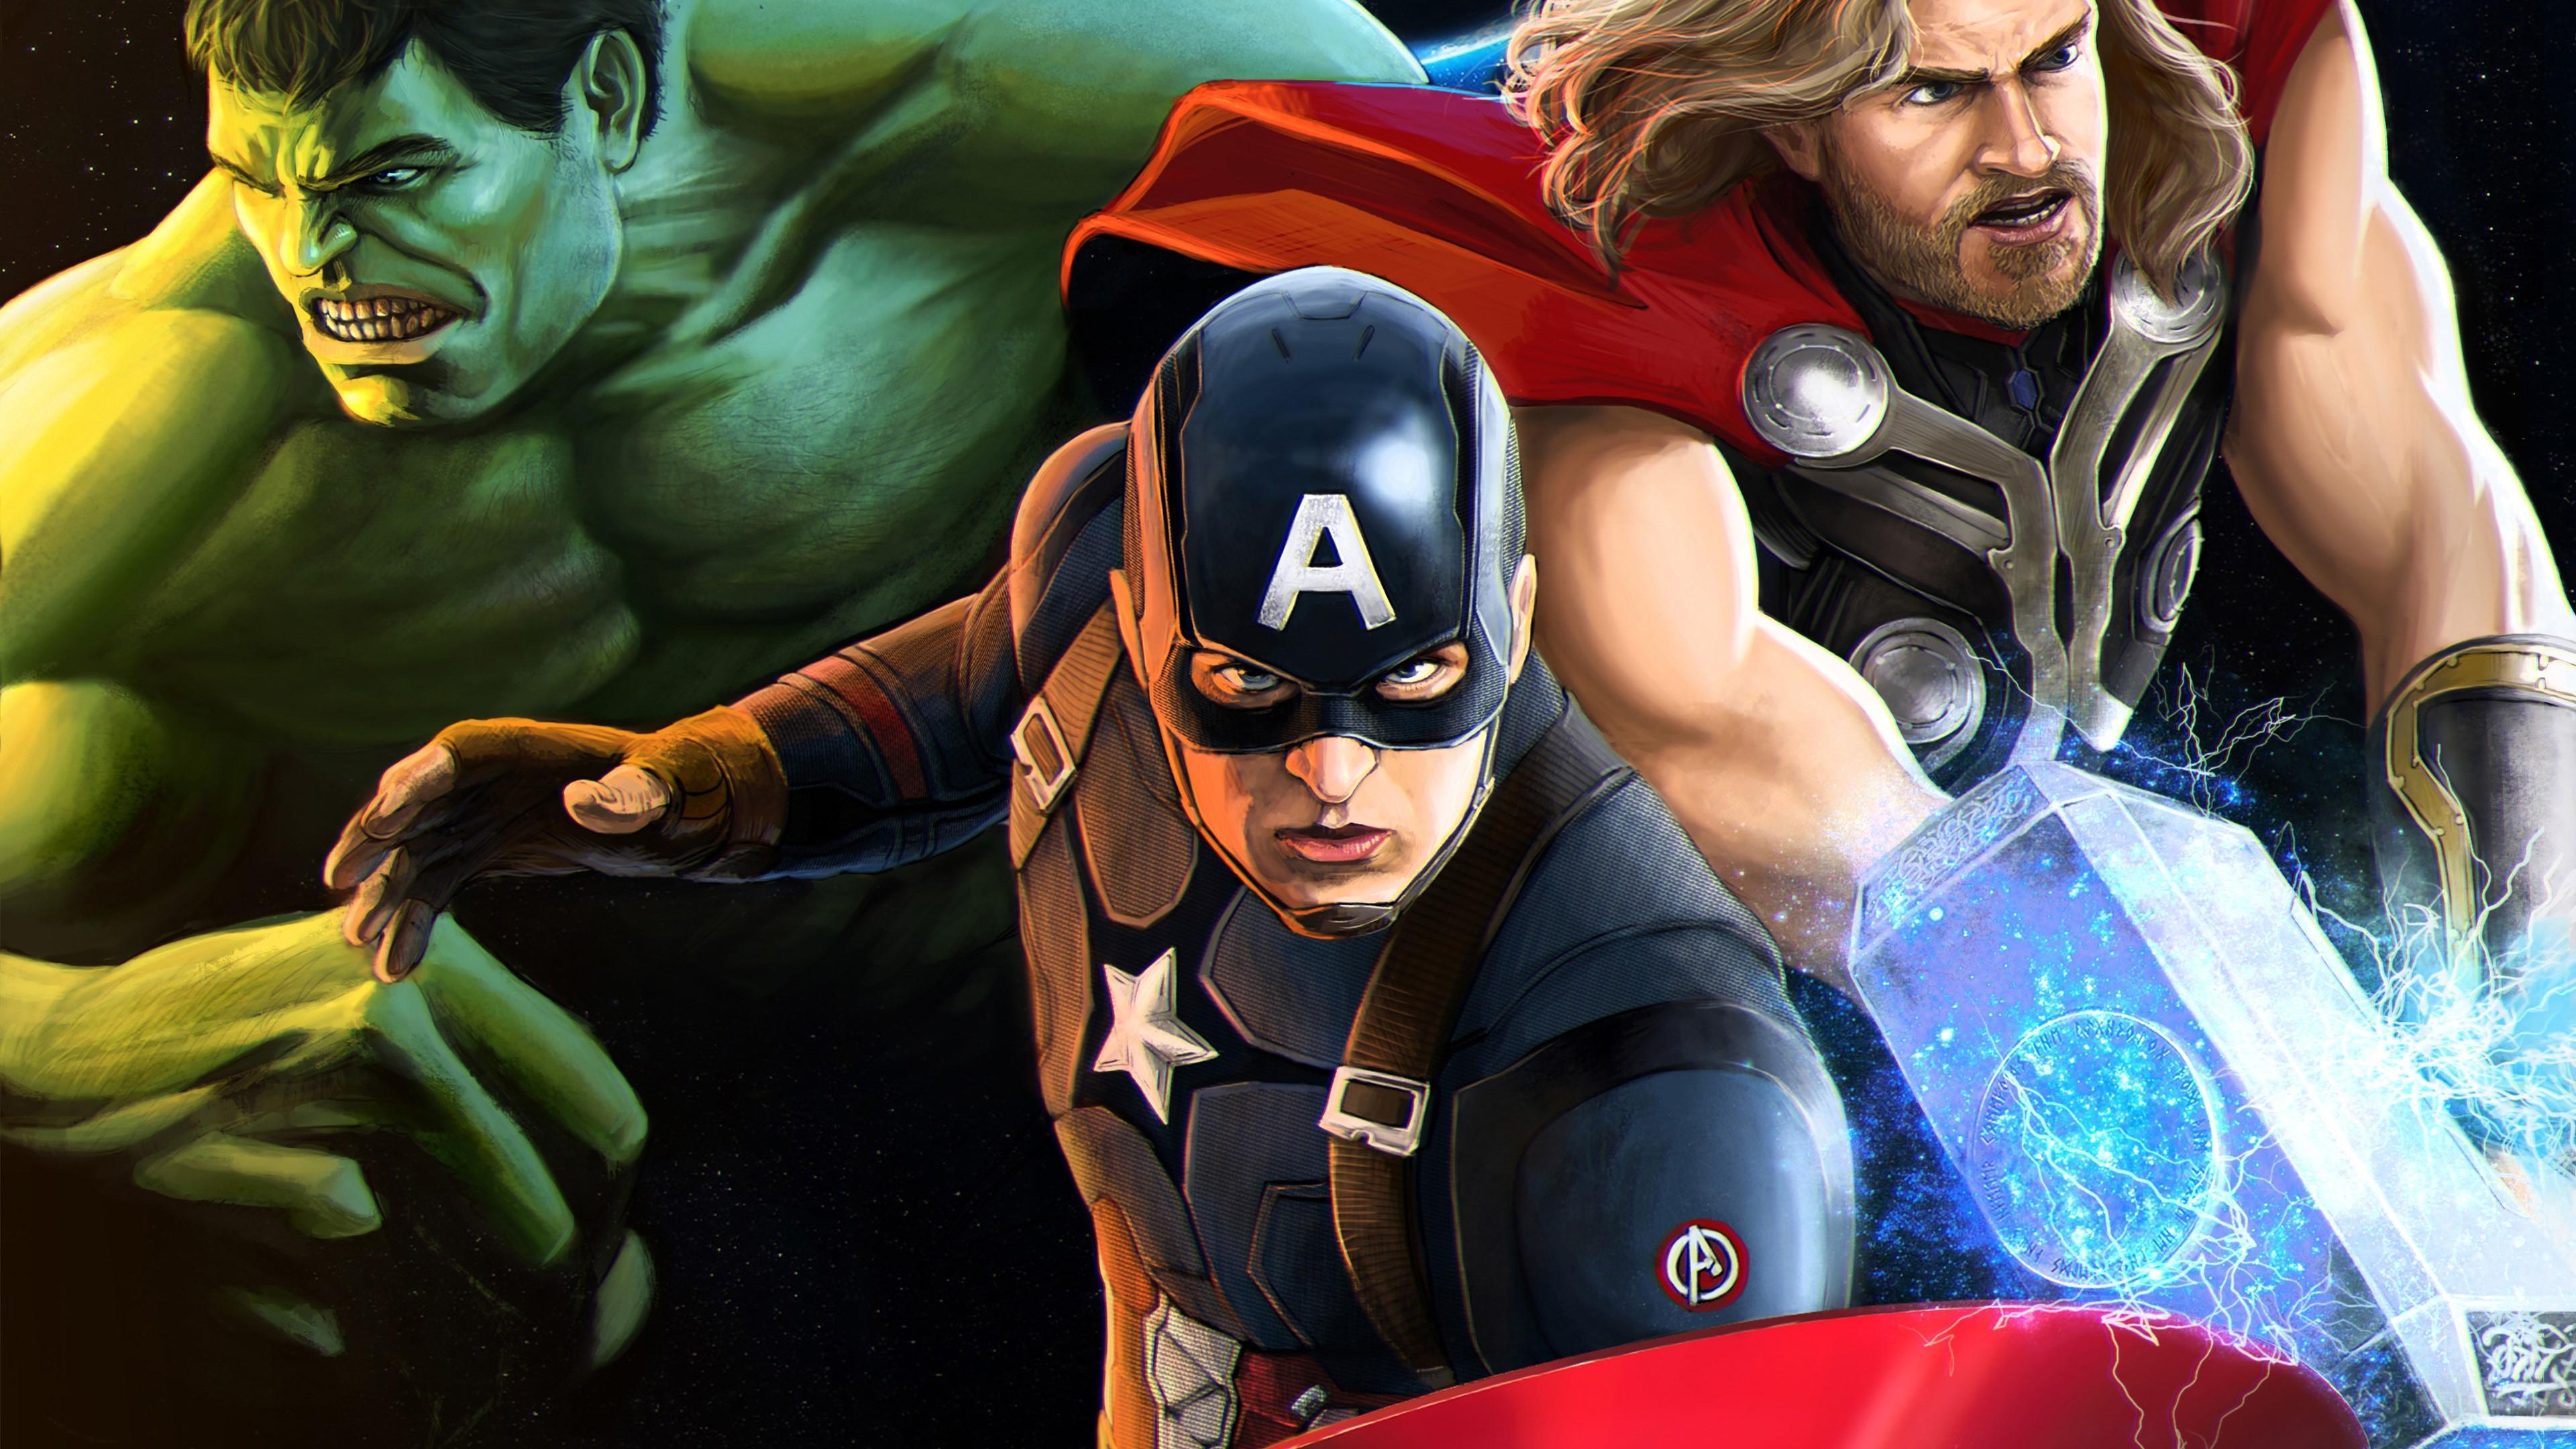 HD wallpaper, Captain America Thor And Huk Mcu 4K